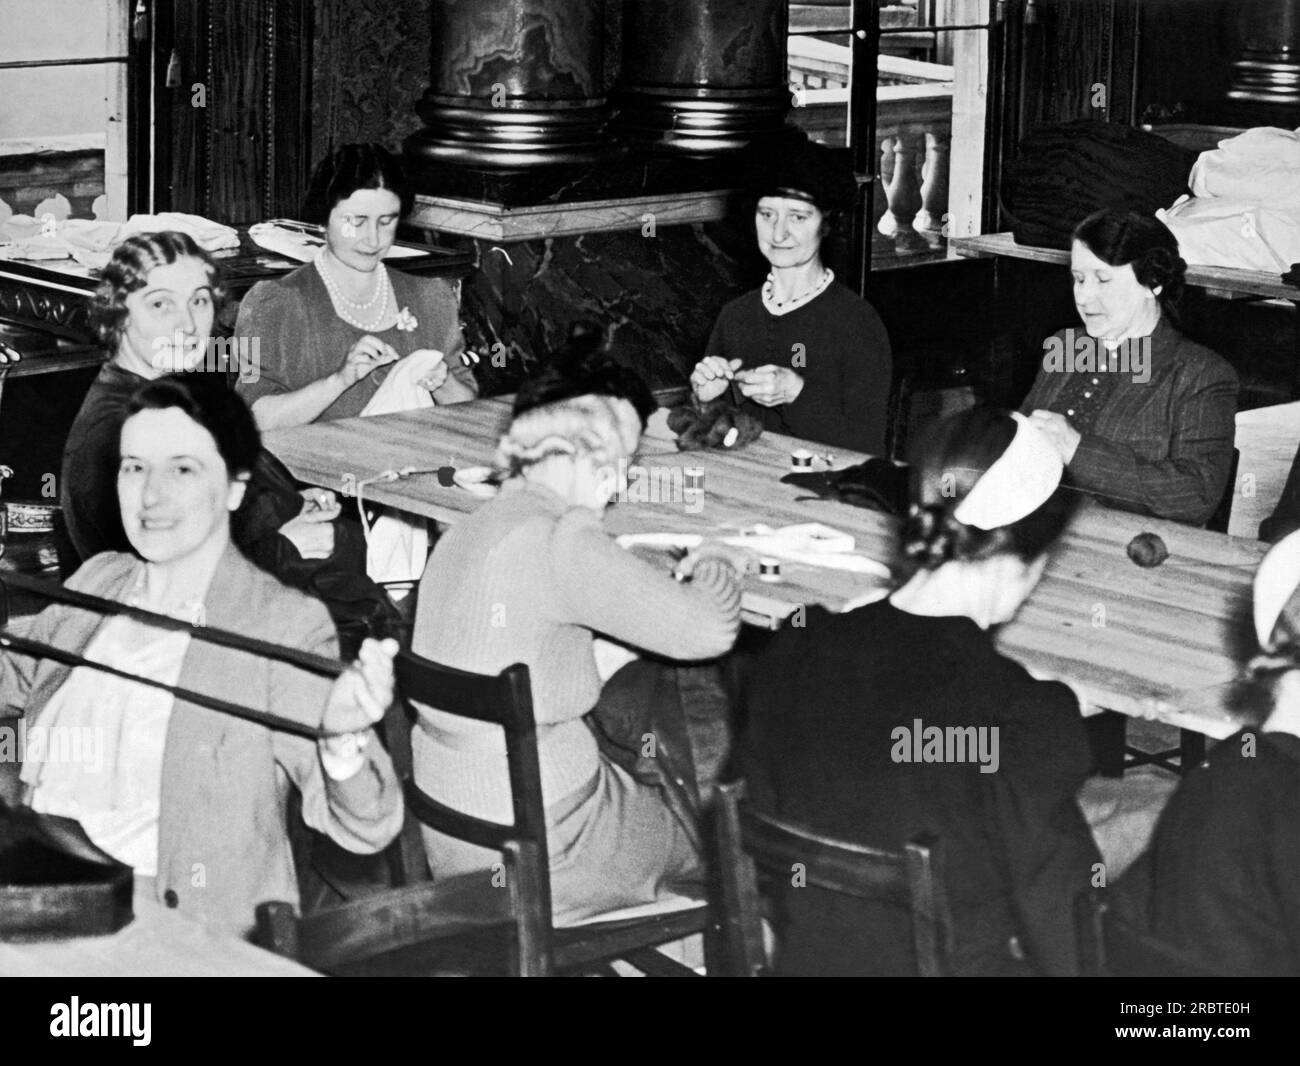 London, England: 21. Oktober 1939 Königin Elizabeth die Königinmutter und ihre Arbeitsgruppe aus Mitarbeitern und Ehefrauen der Mitarbeiter der Royal Mews treffen sich zweimal pro Woche im Blauen Zeichenraum des Buckingham Palace, um Kleidung und Operationsanzüge für das Rote Kreuz herzustellen. Stockfoto